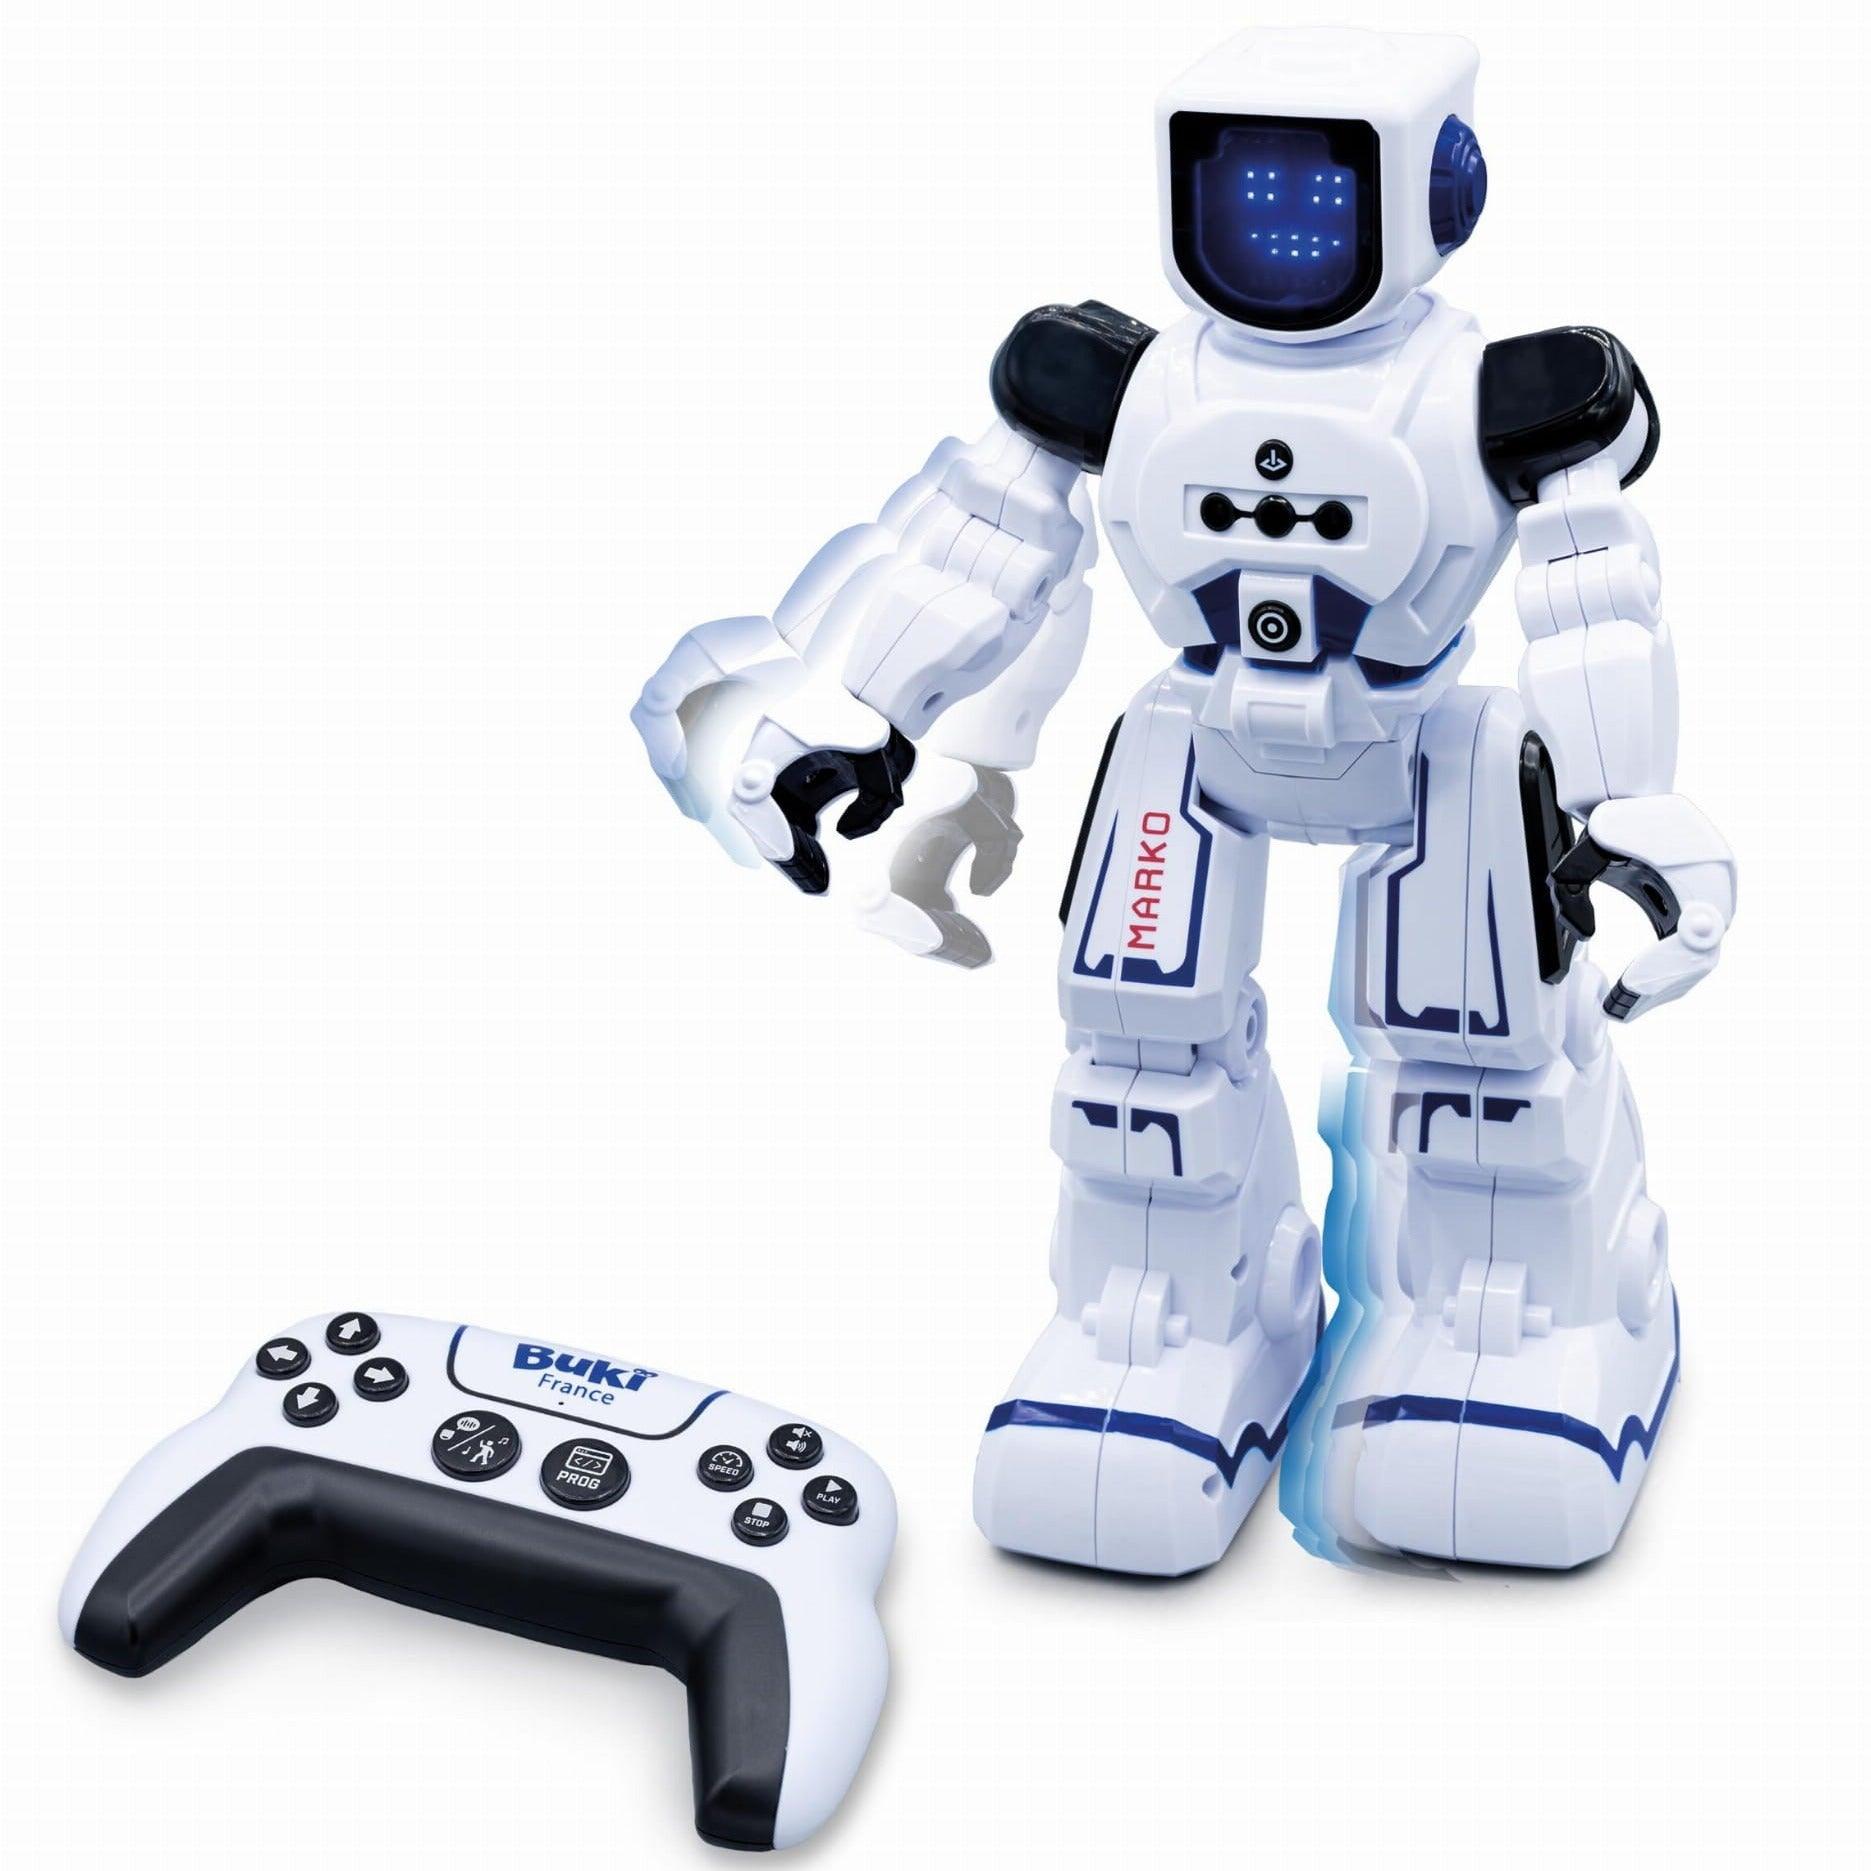 Beech: Robot interactif de Marko